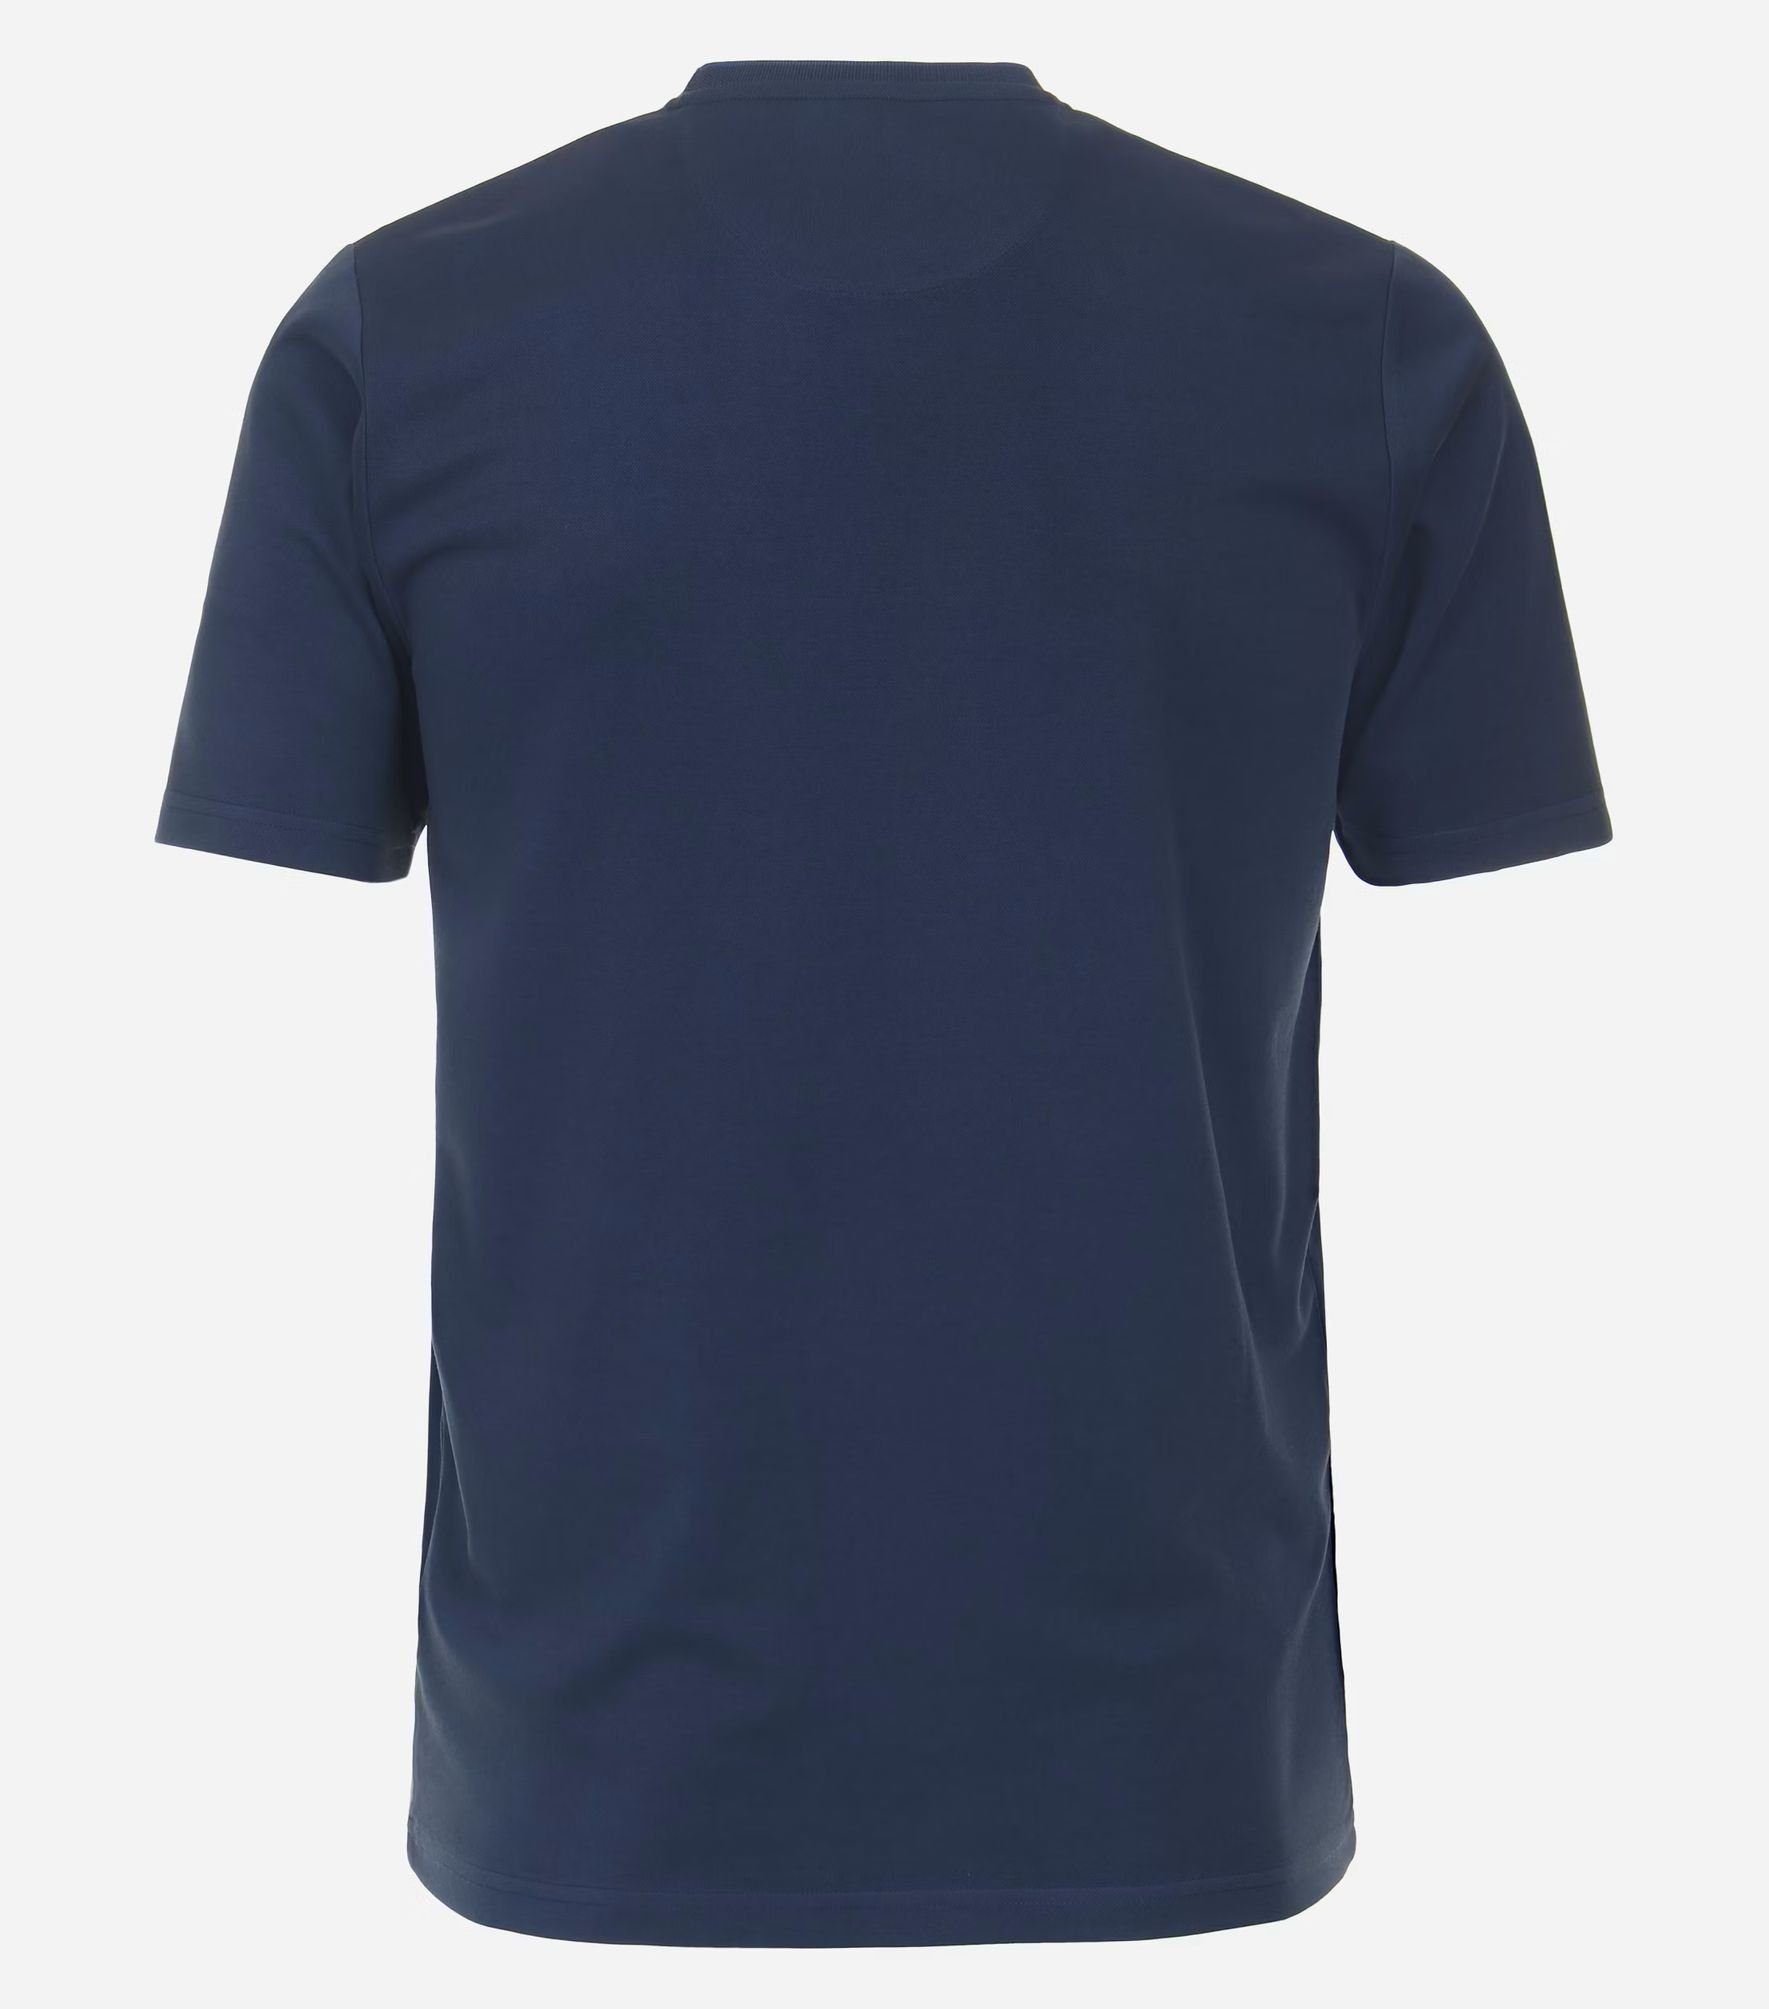 pflegeleicht T-Shirt Blau(100) Redmond 231930650